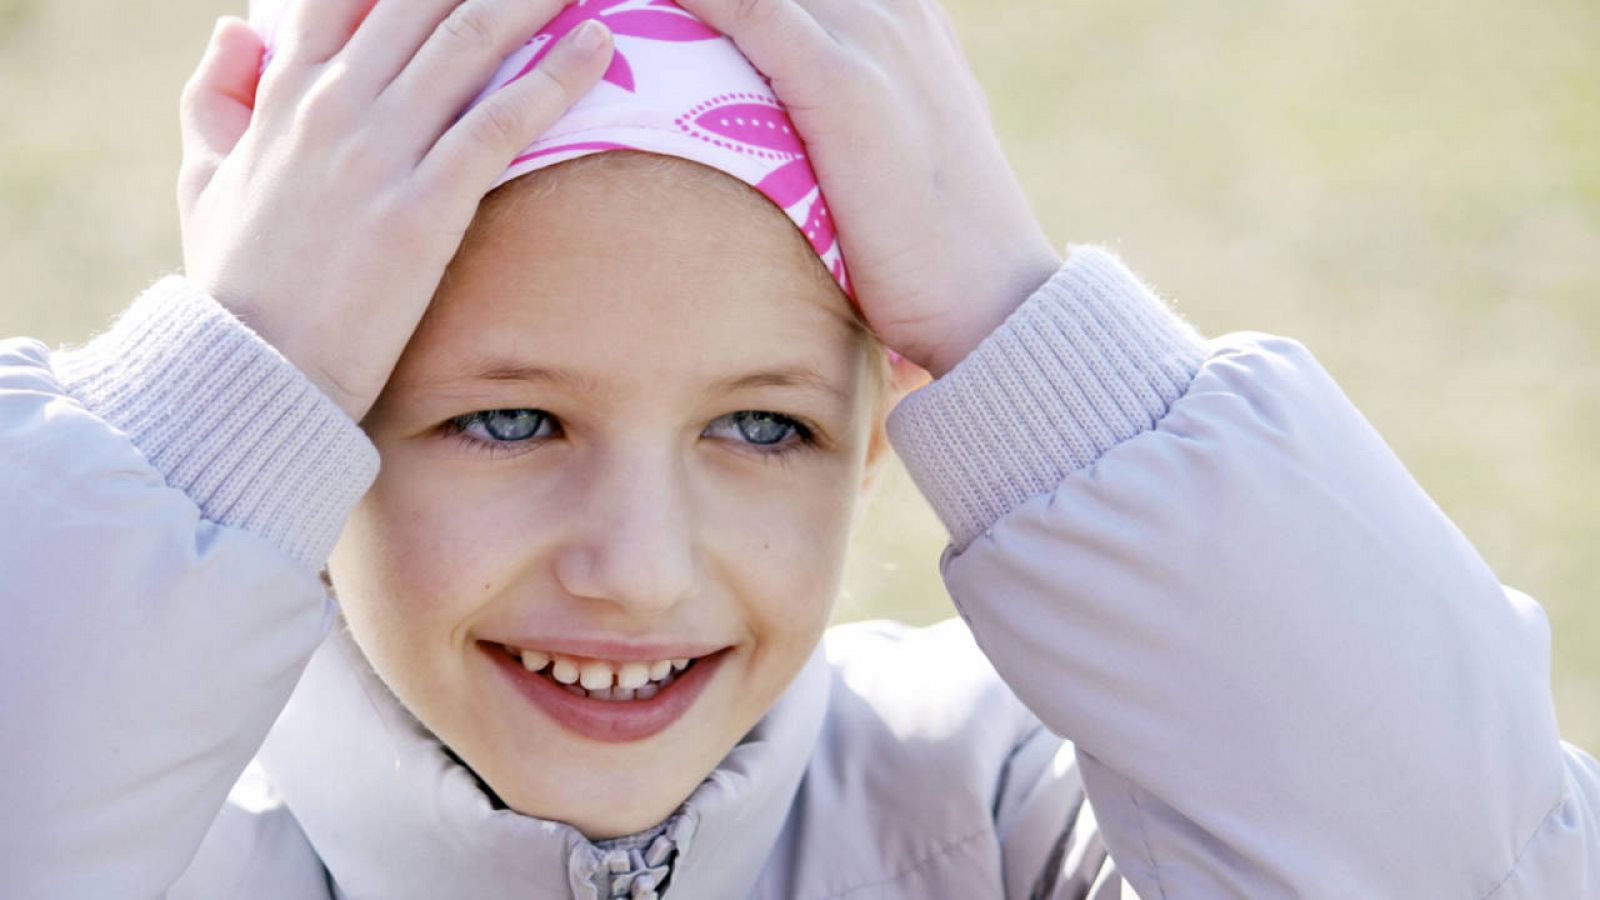 Las evidencias científicas demuestran que el ejercicio mejora la calidad de vida de los niños con cáncer.